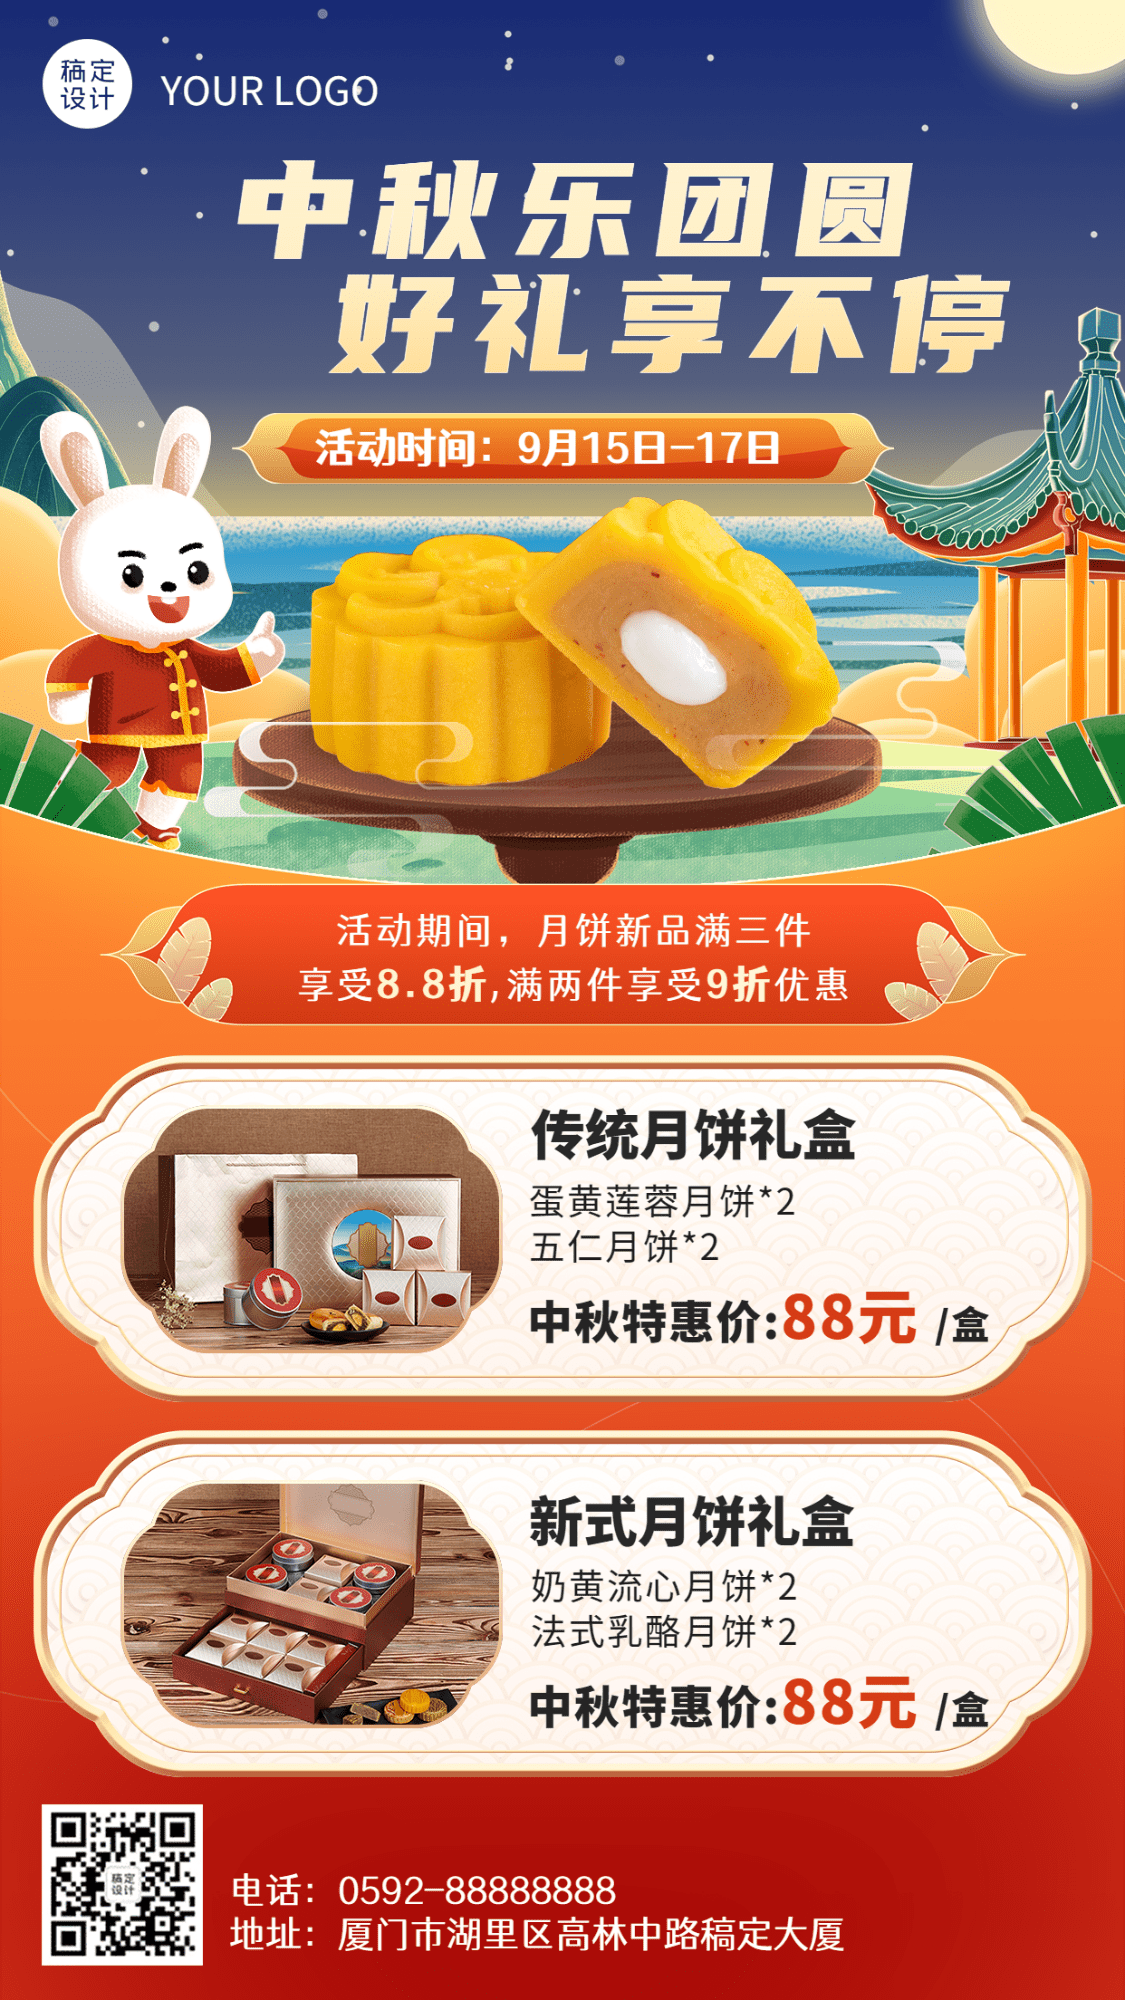 中秋节传统美食节日营销手绘插画手机海报预览效果